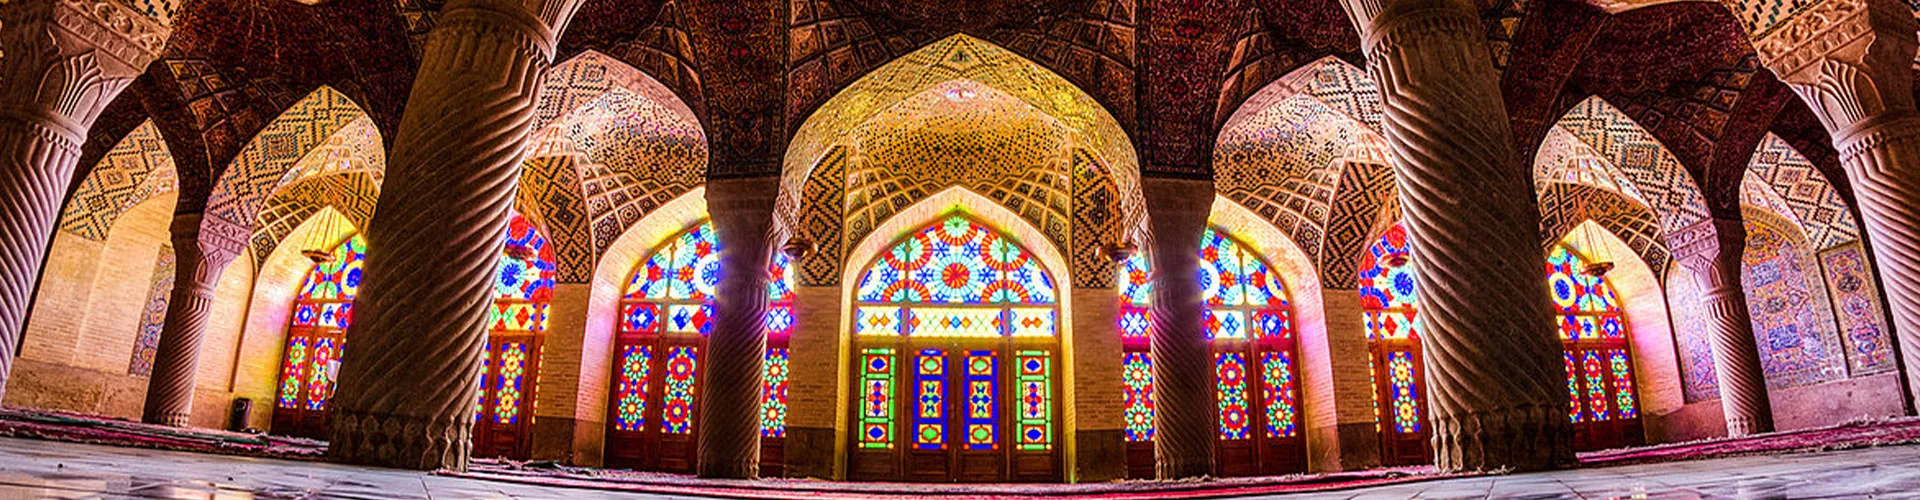 تور شیراز تابستان